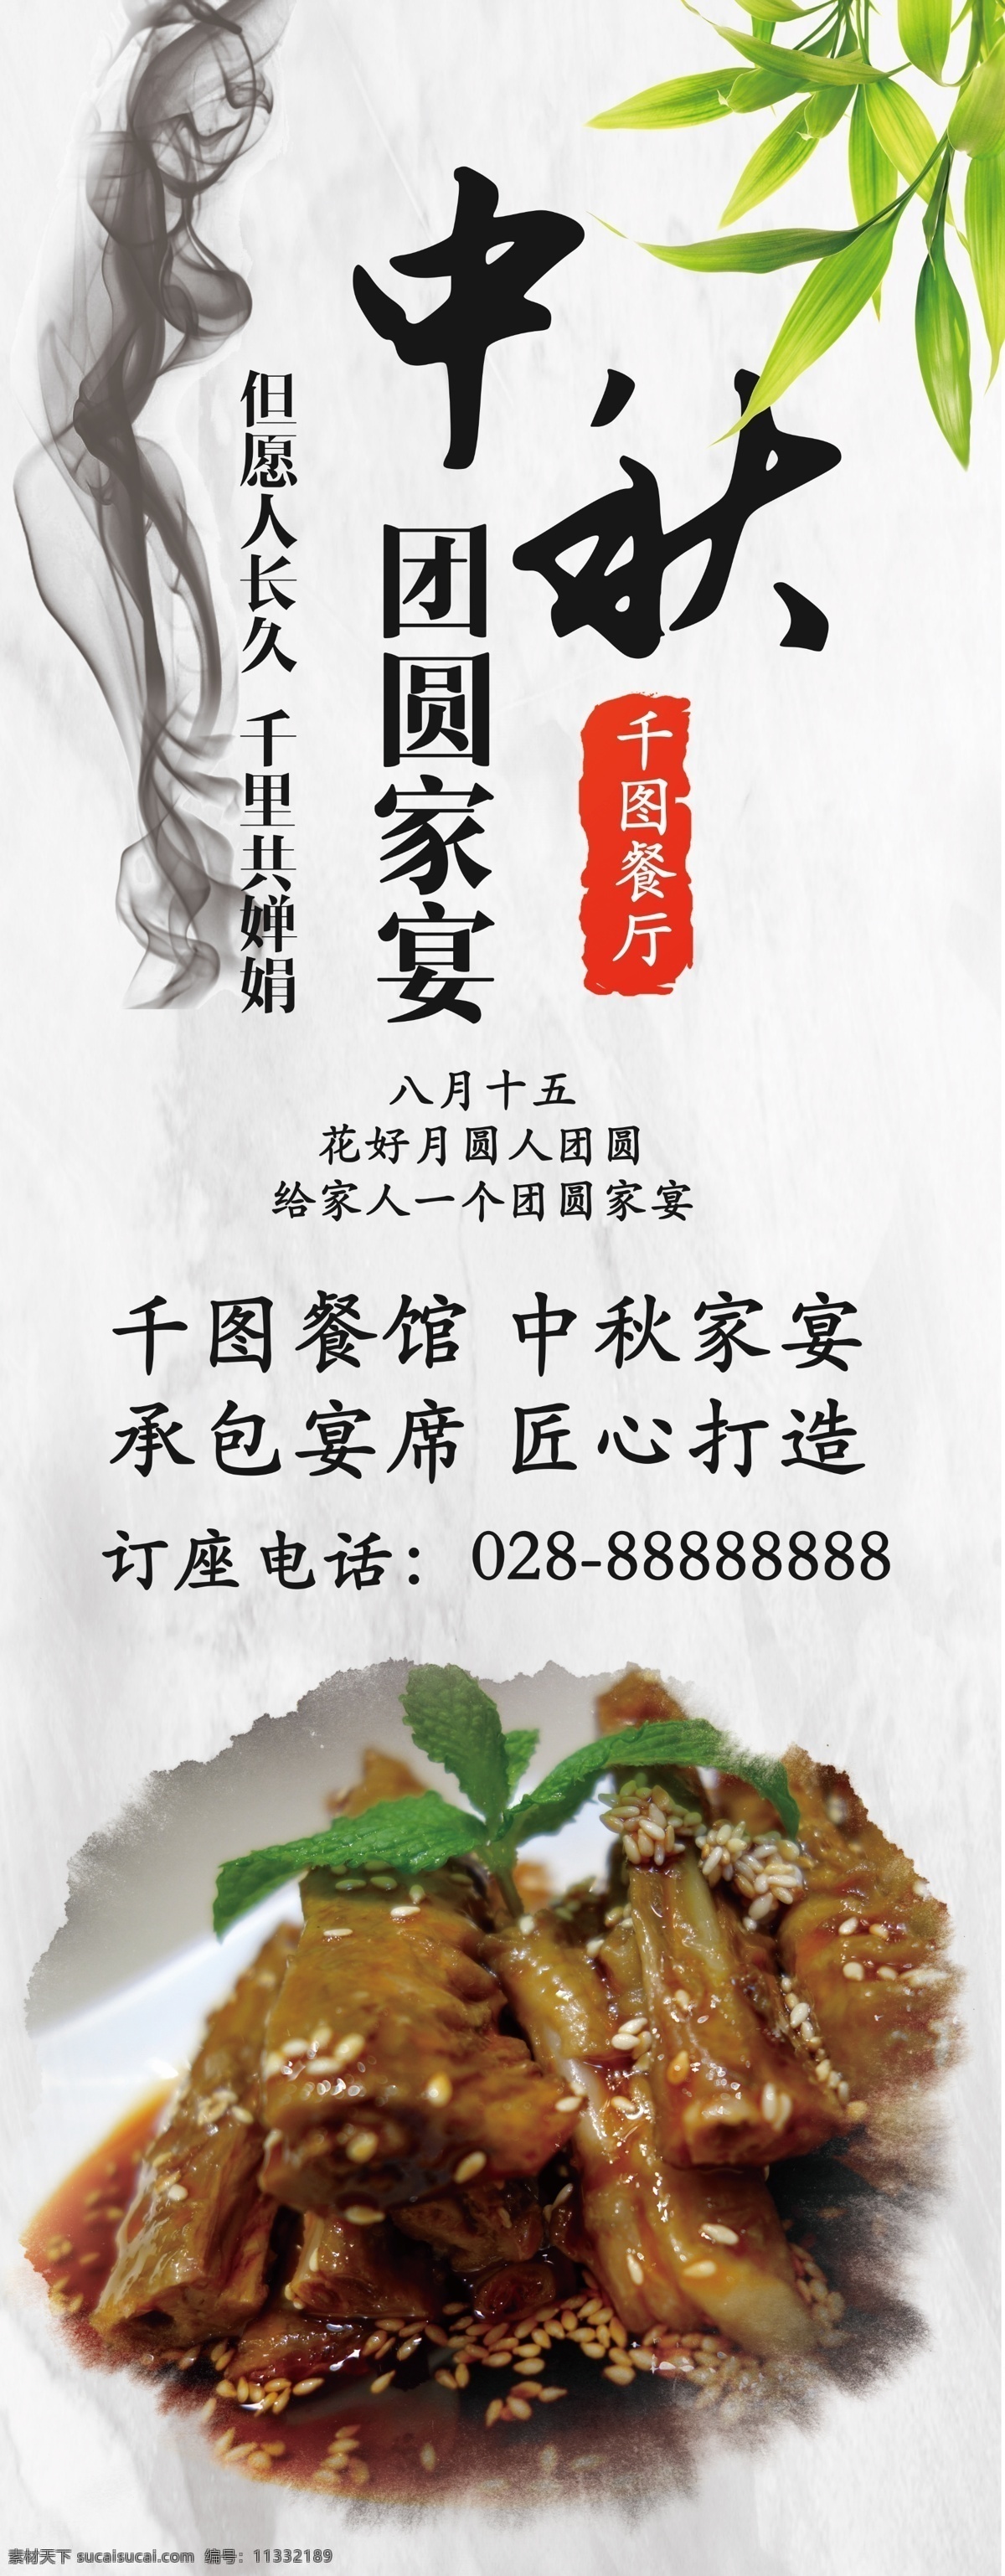 白色 中国 风 水墨 中秋 餐厅 家宴 活动 宣传 展架 中国风 中餐 美食 竹叶